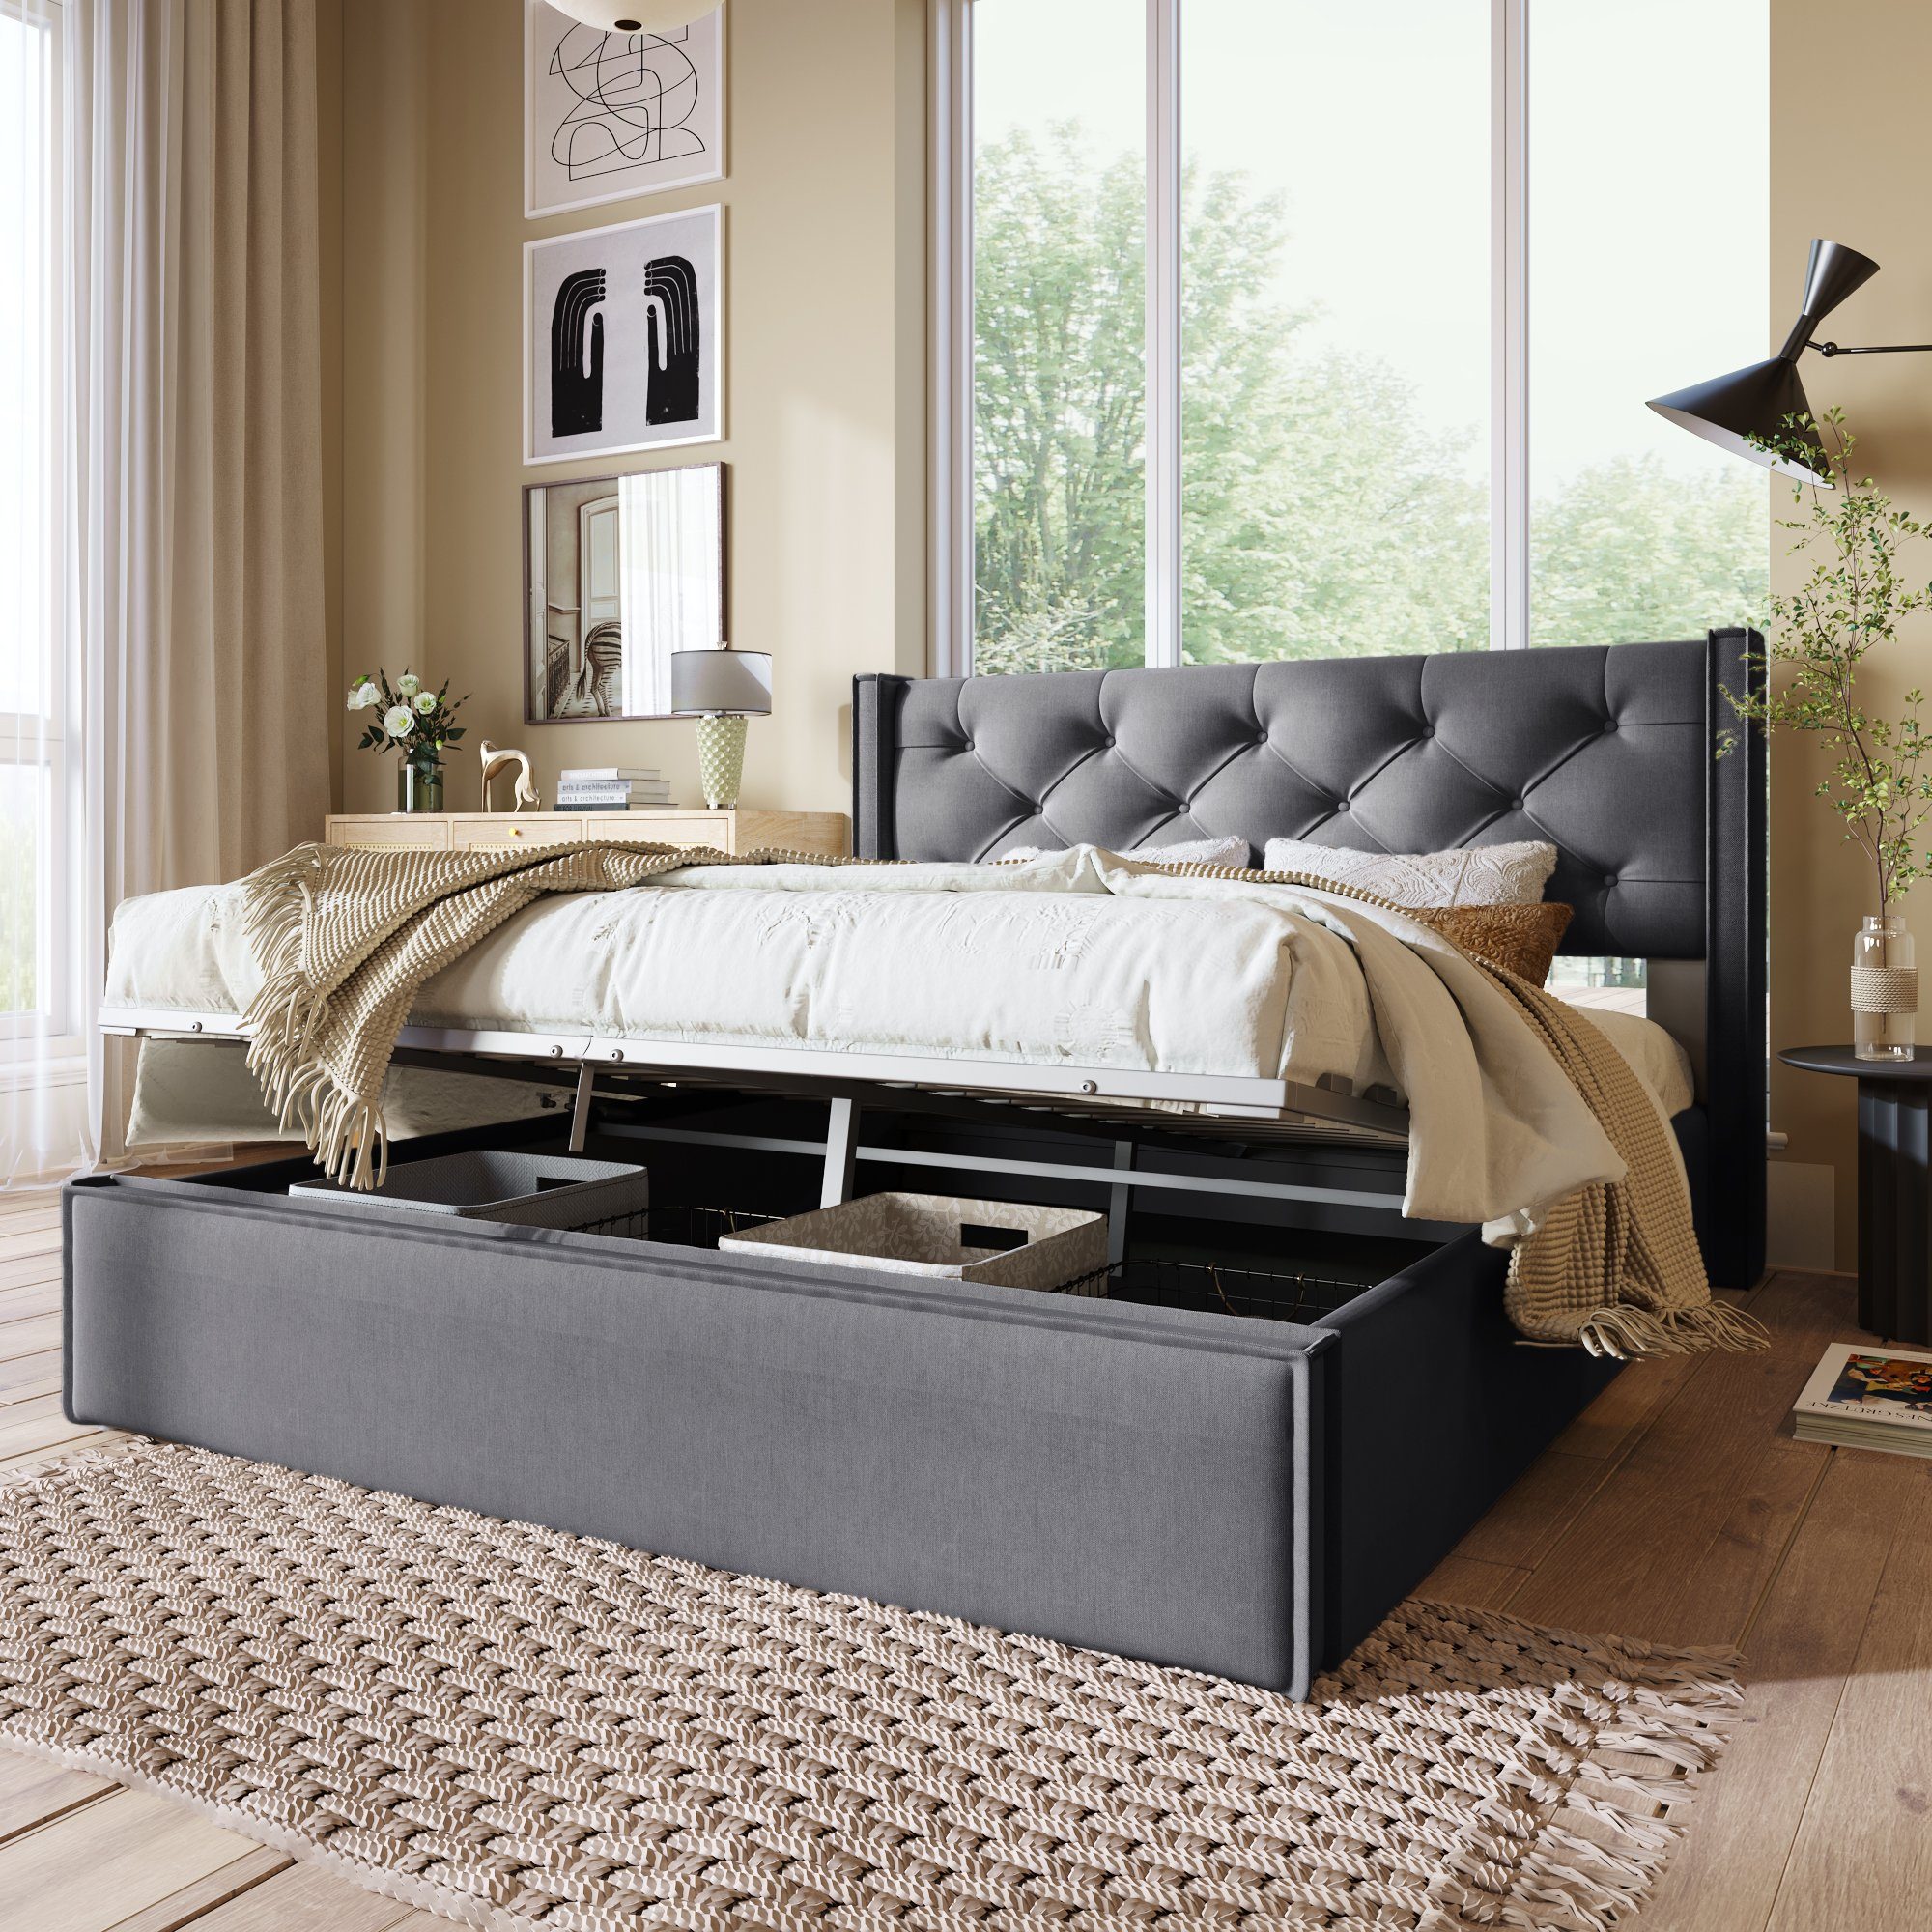 OKWISH Polsterbett Hydraulisches, 140x200cm,Bett mit Lattenrost aus Metallrahmen, Baumwolle Grau